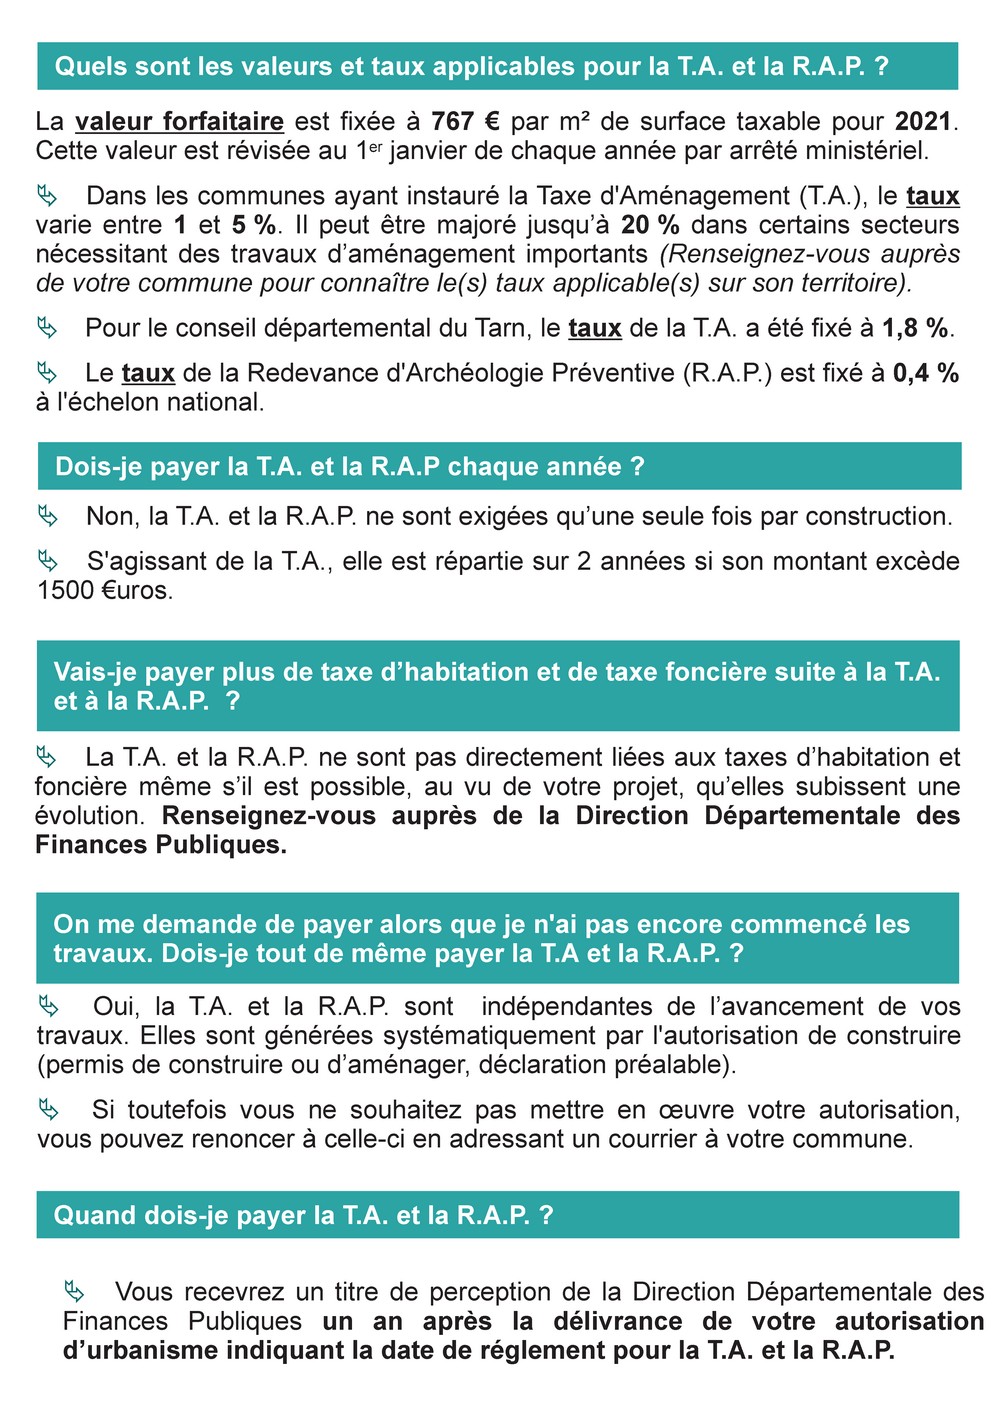 Taxes d_urbanisme _3-4_.jpg